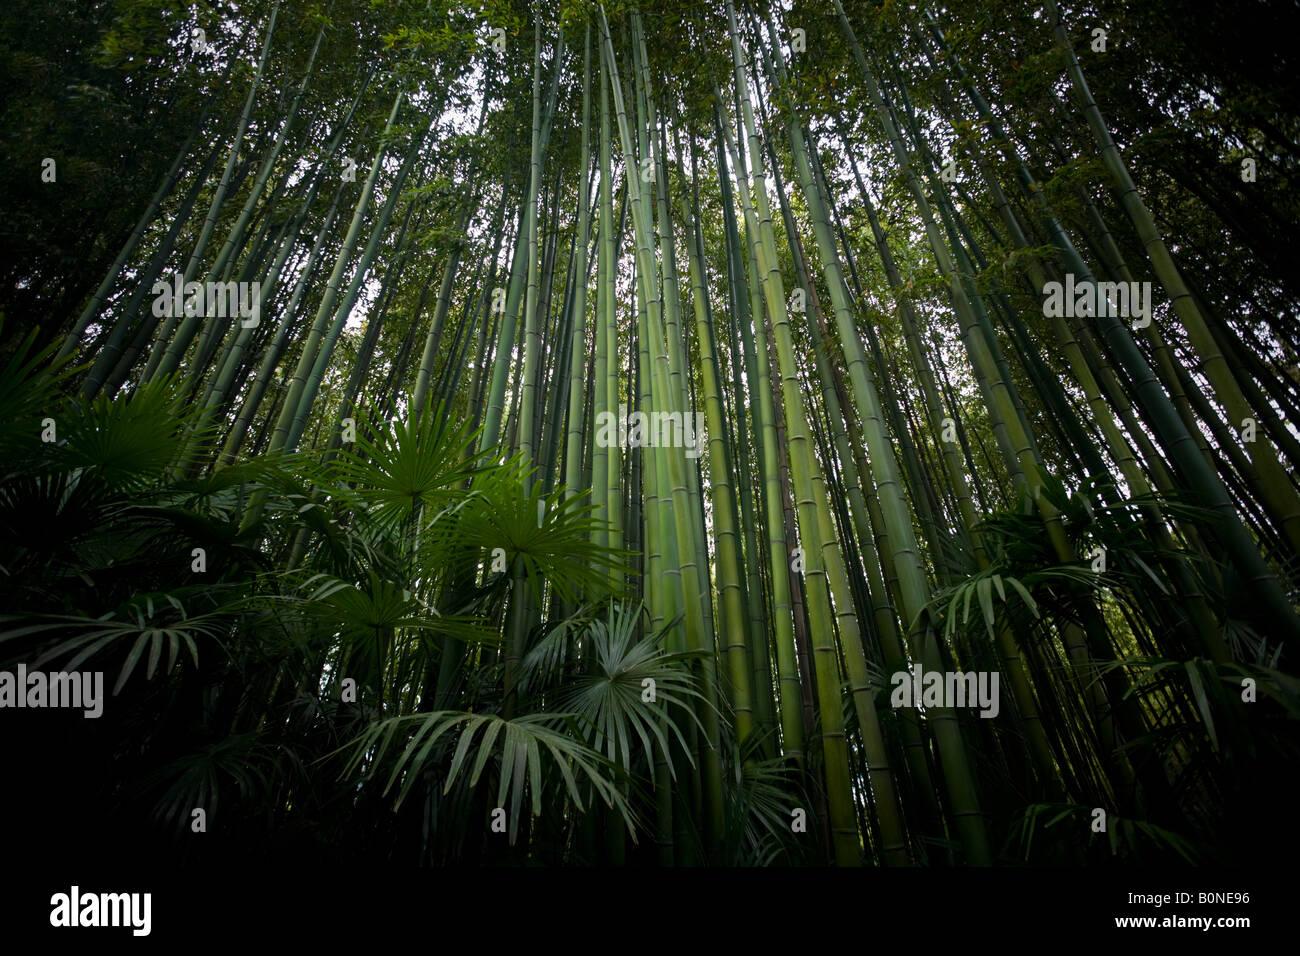 Un bambou chinois et palmeraie. Forêt de bambous (Phyllostachys bambusoides) et palmiers de Chine (Trachycarpus fortunei) Banque D'Images